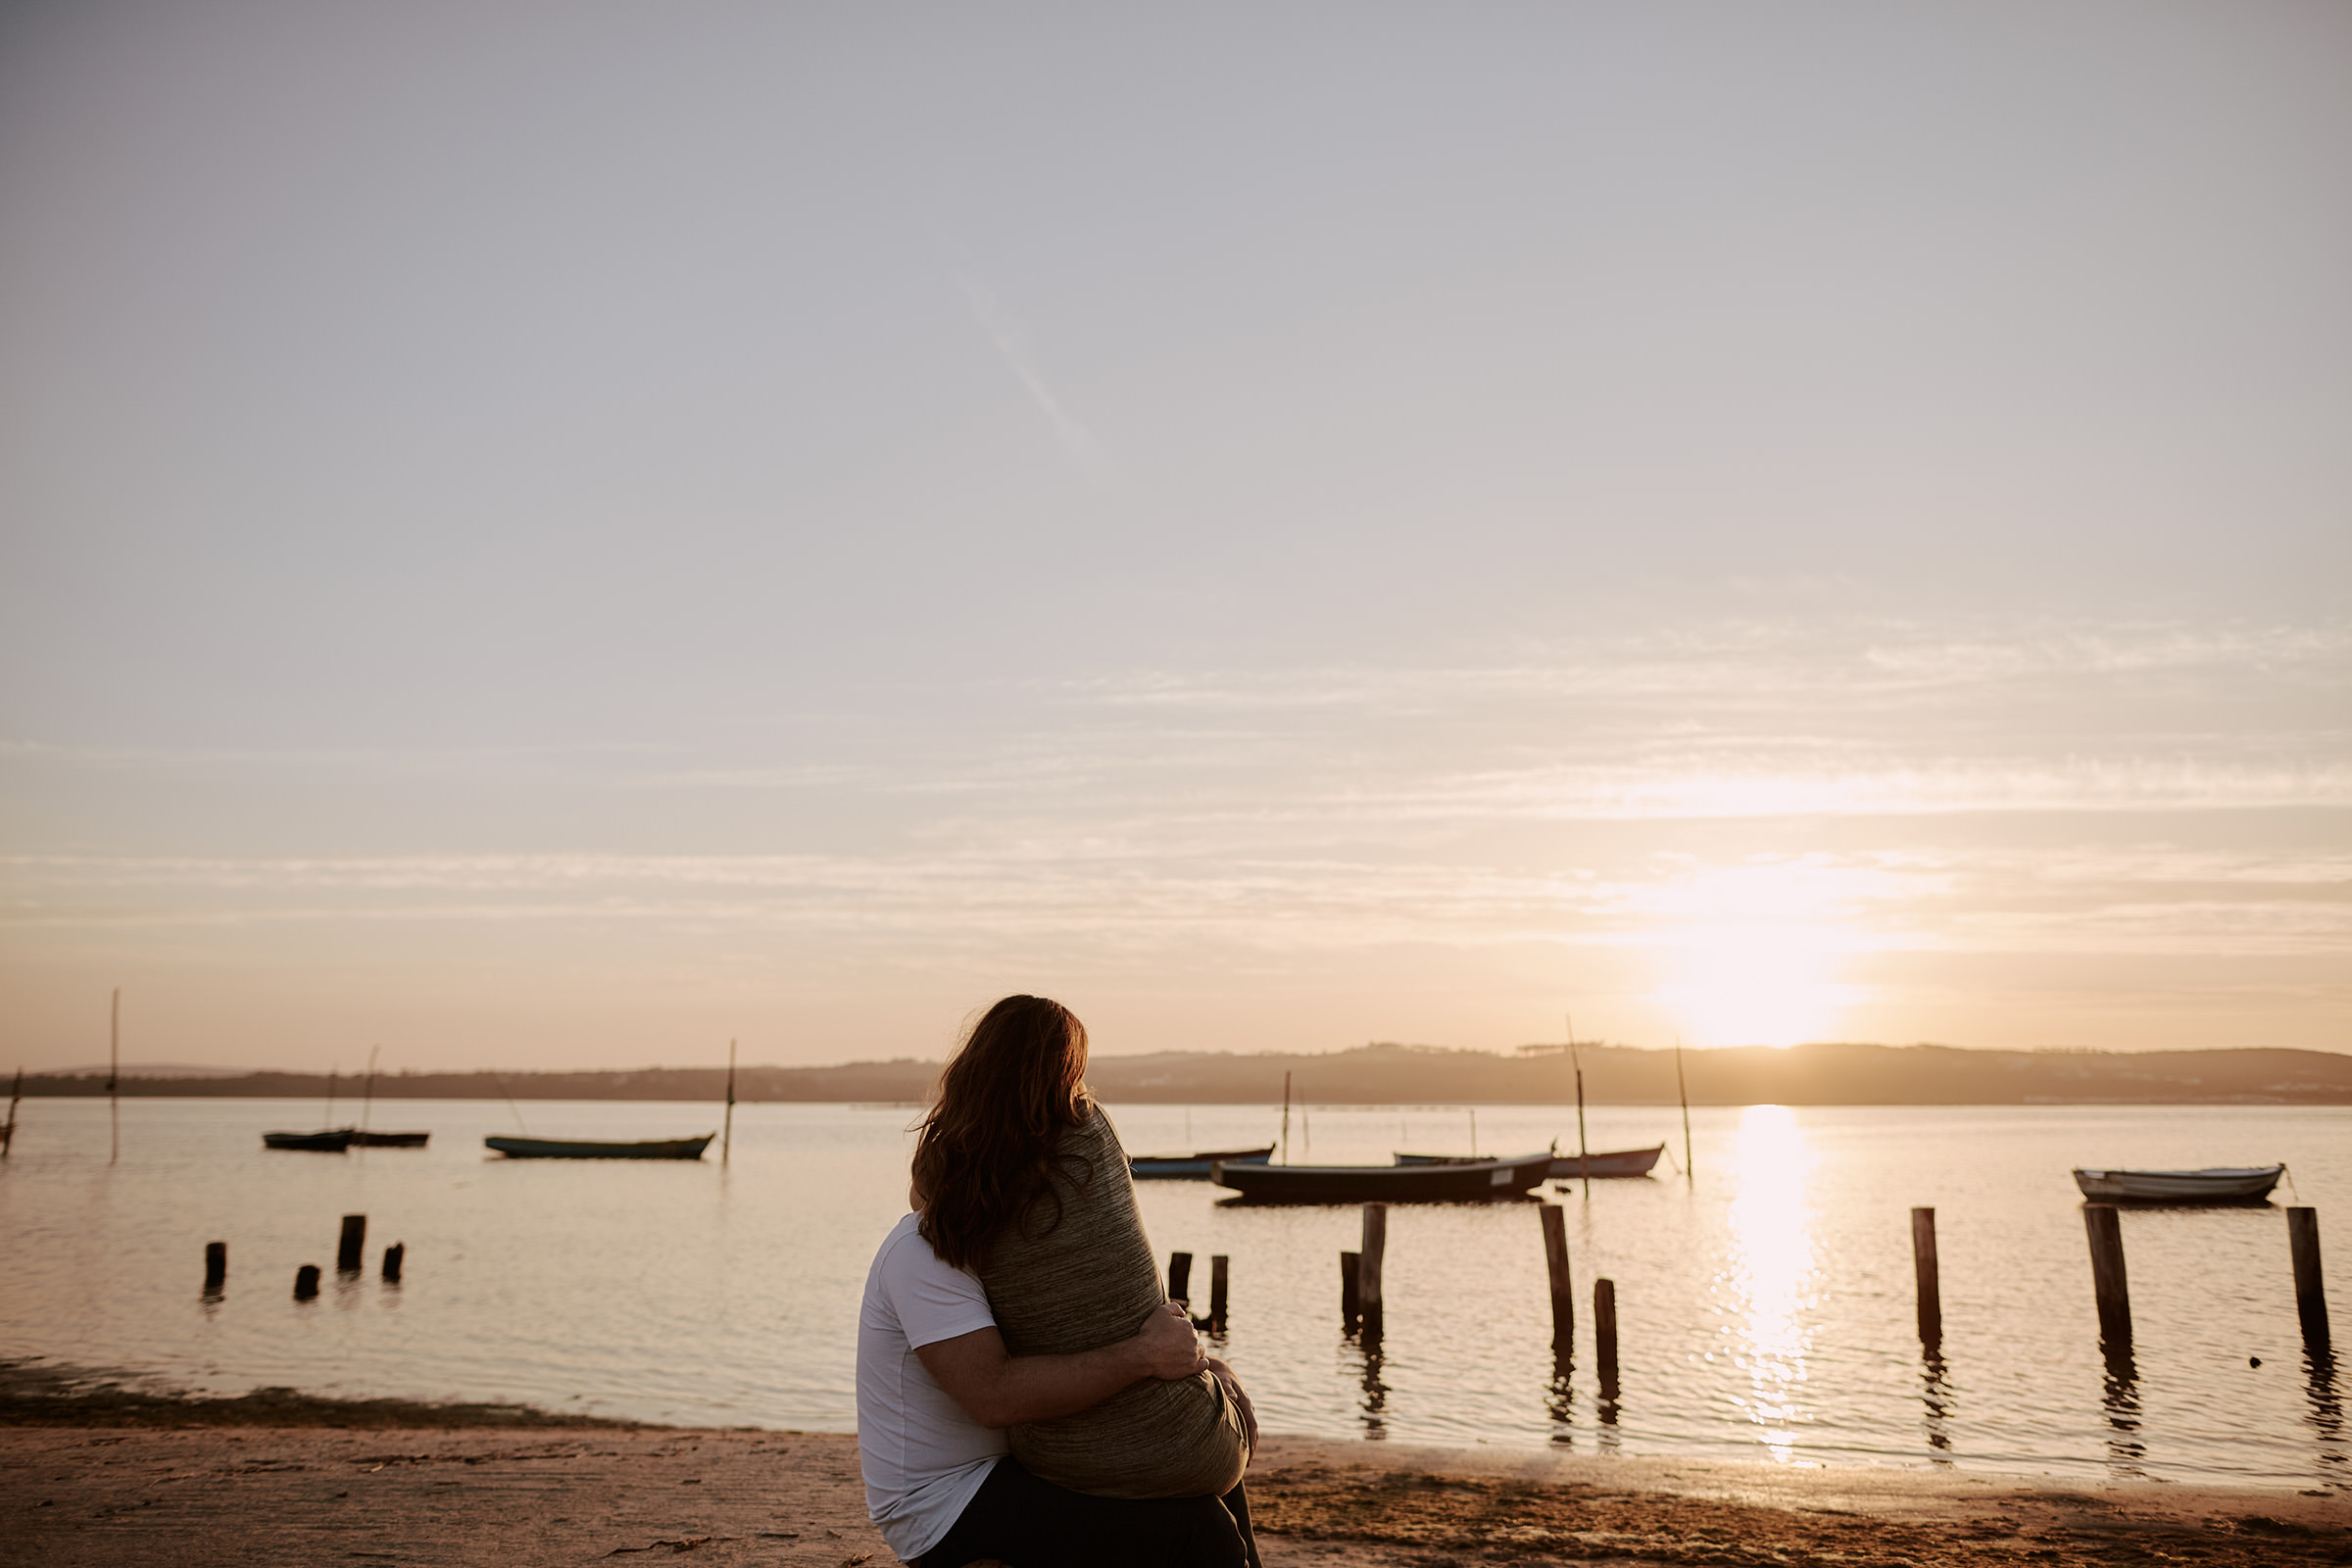 sessao fotografica solteiros documental namoro nuno lima fotografia fotografo um momento na vida portugal lagoa obidos por do sol barcos